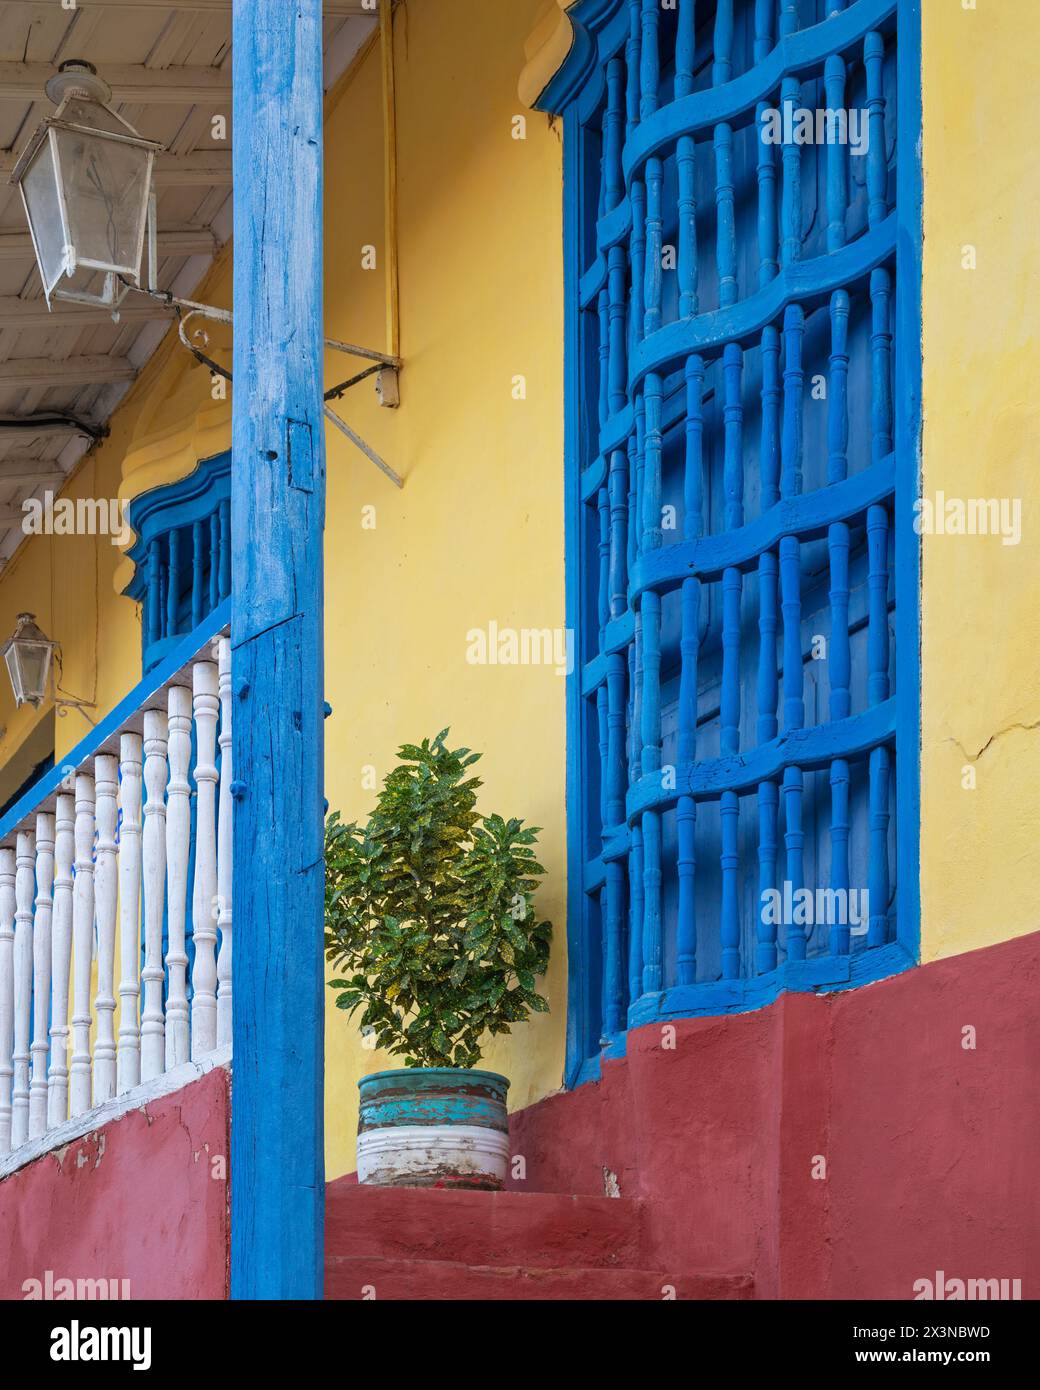 Murs peints de couleurs vives et grilles métalliques sur les fenêtres de maisons anciennes dans les ruelles de Trinidad, Cuba. Banque D'Images